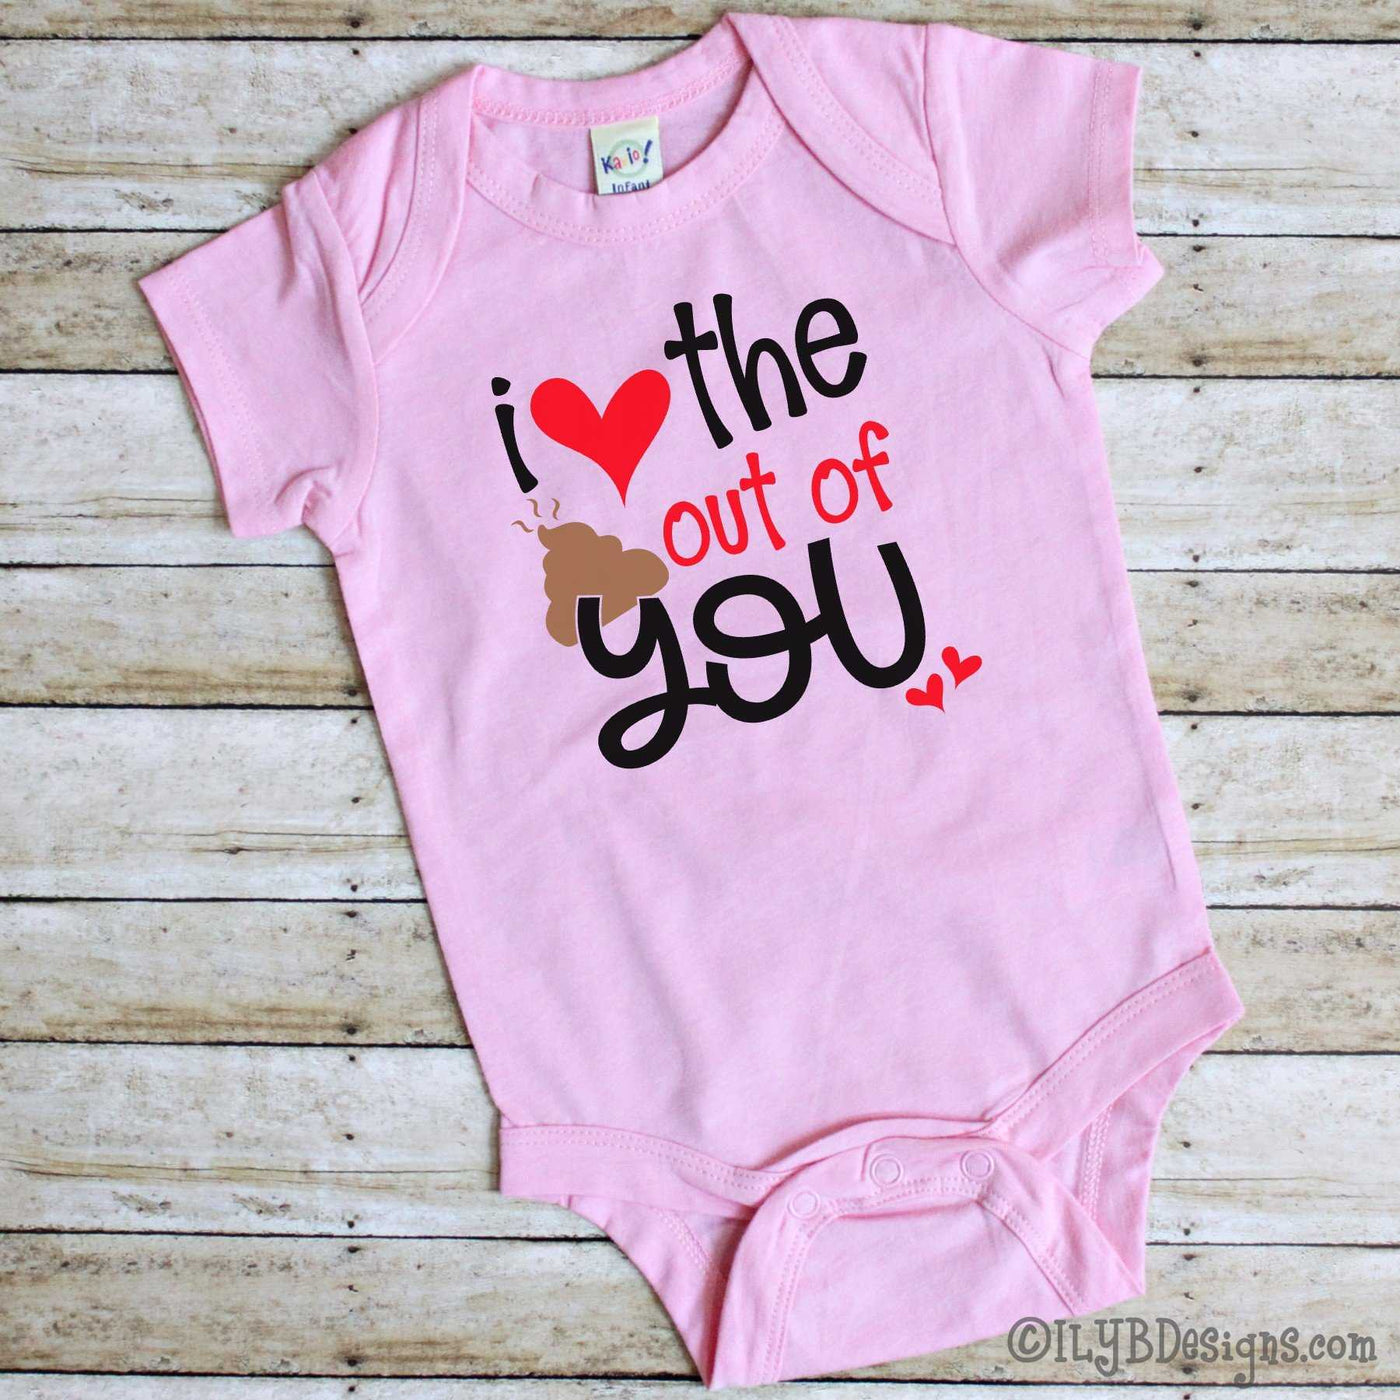 Valentine's Day Infant Bodysuits - I LOVE THE POO OUT OF YOU Infant Bodysuit - Poop Emoji Infant Bodysuit - ILYB Designs